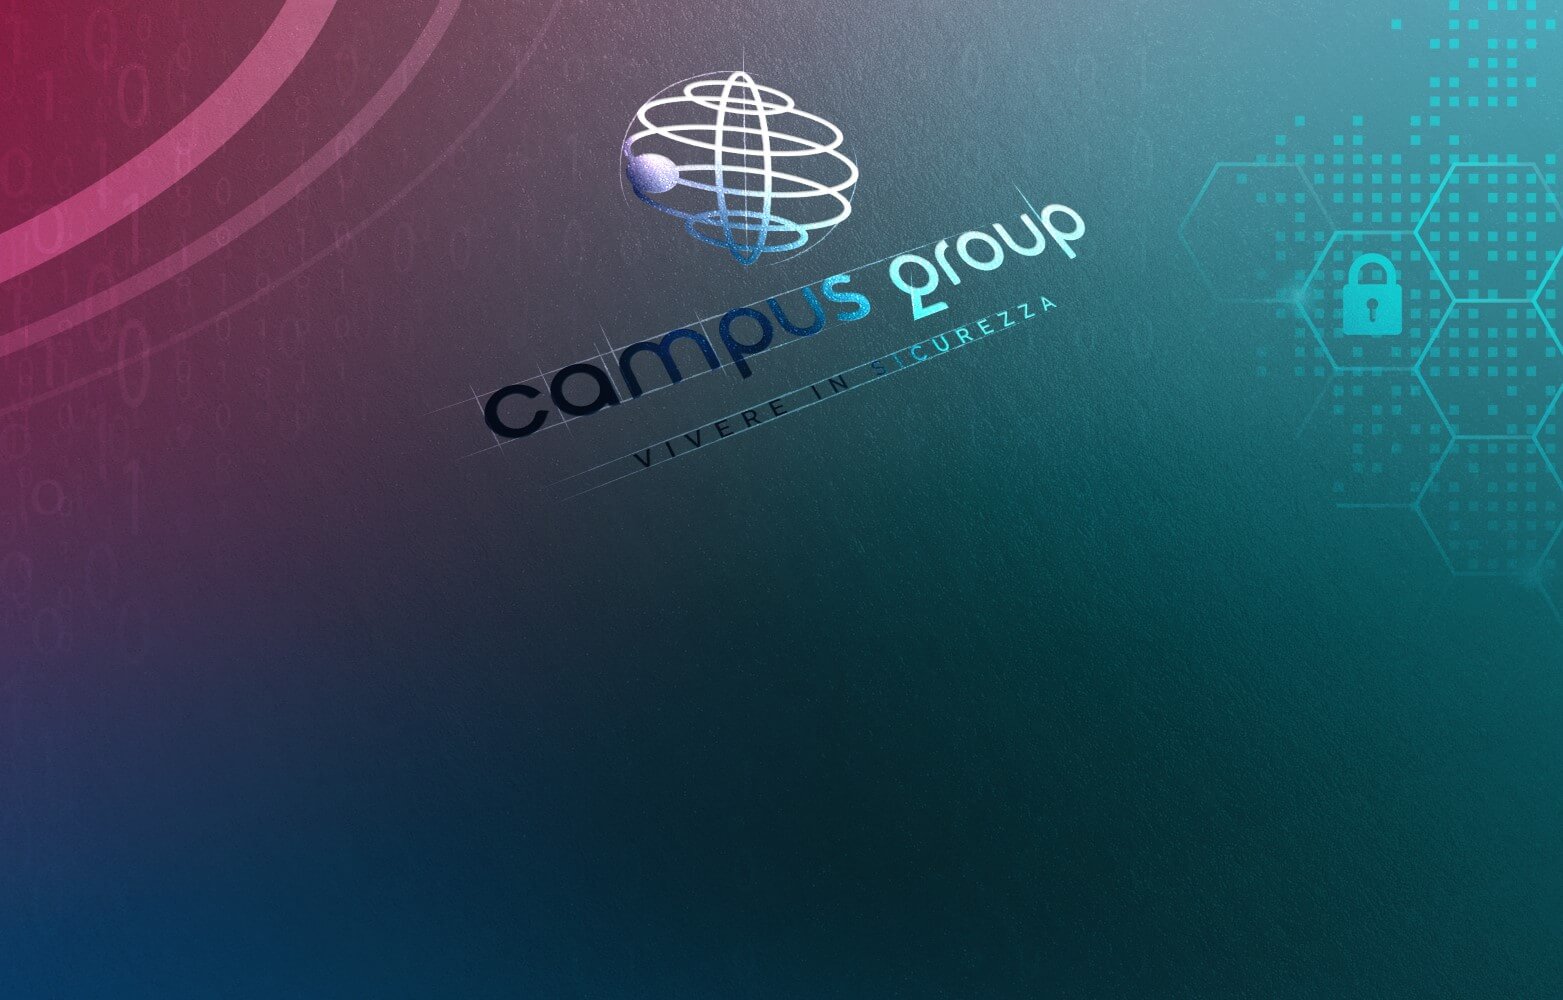 Campus Group e la sua nuova immagine aziendale